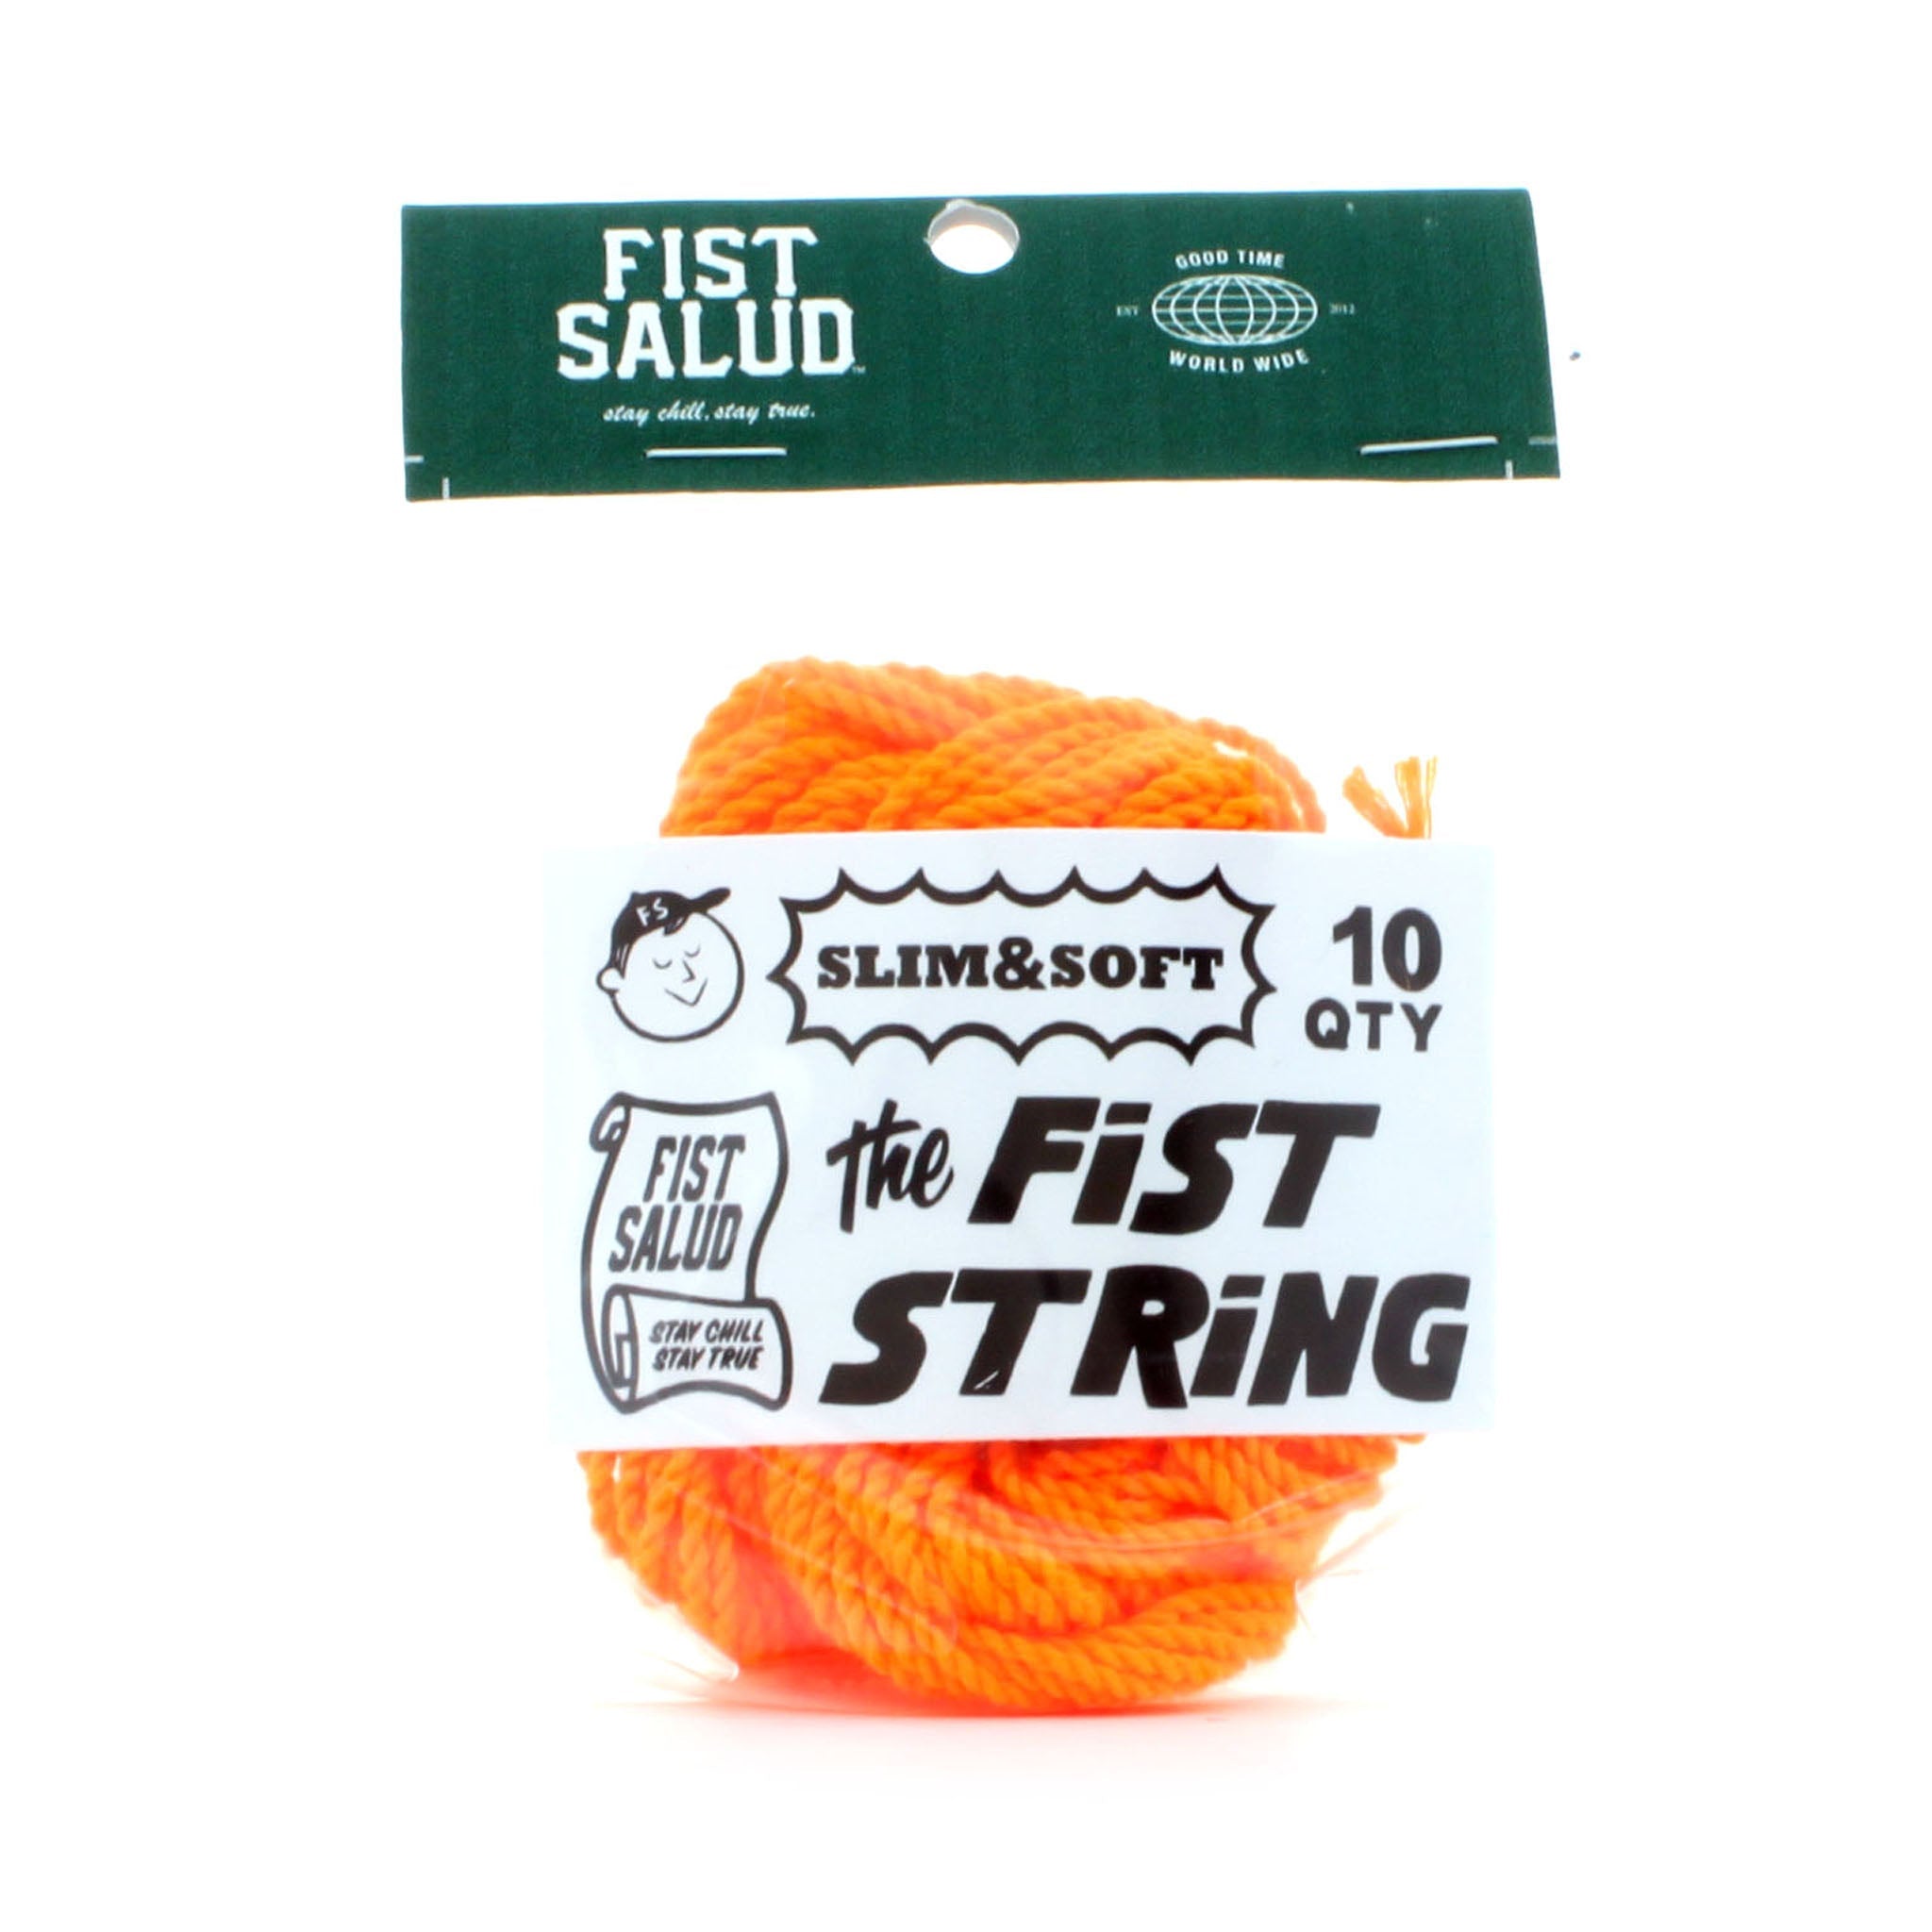 FISTSALUD FIST String (Slim & Soft) x10